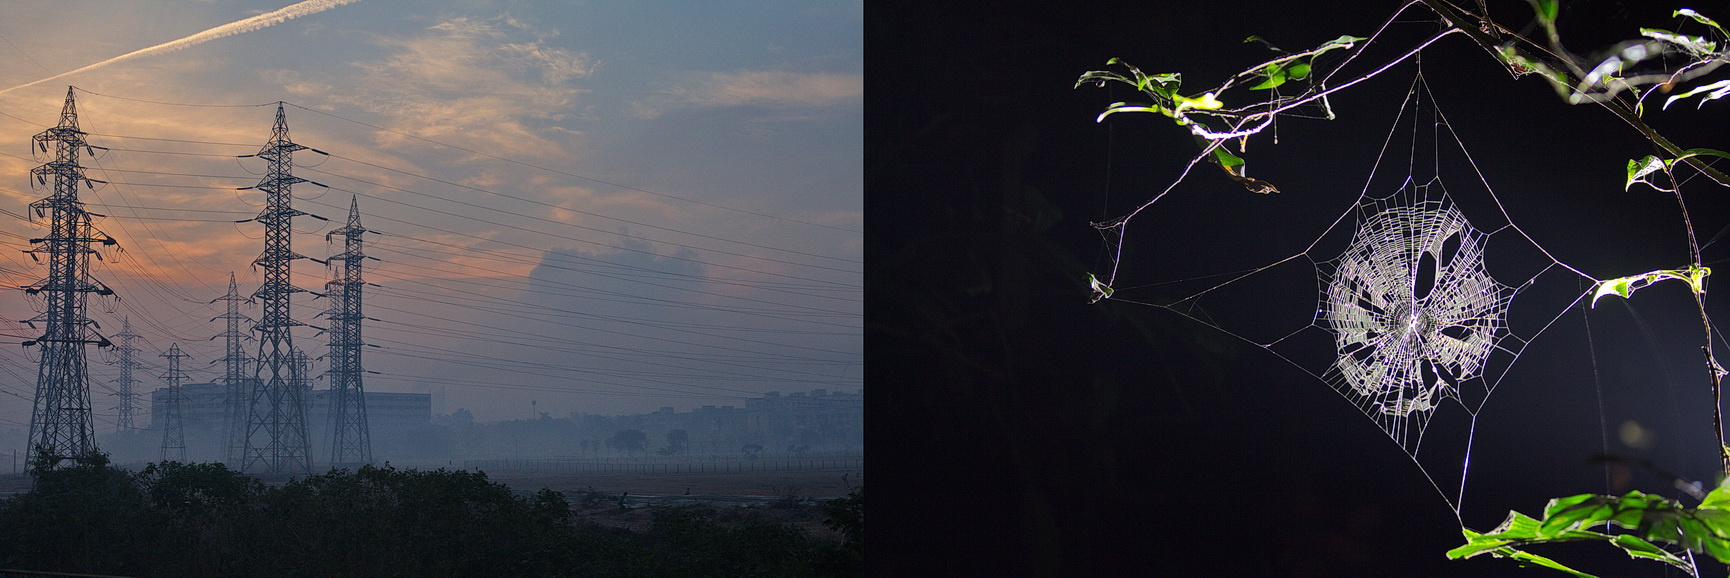 По словам фотографа, в Индии город и природа тесно связаны